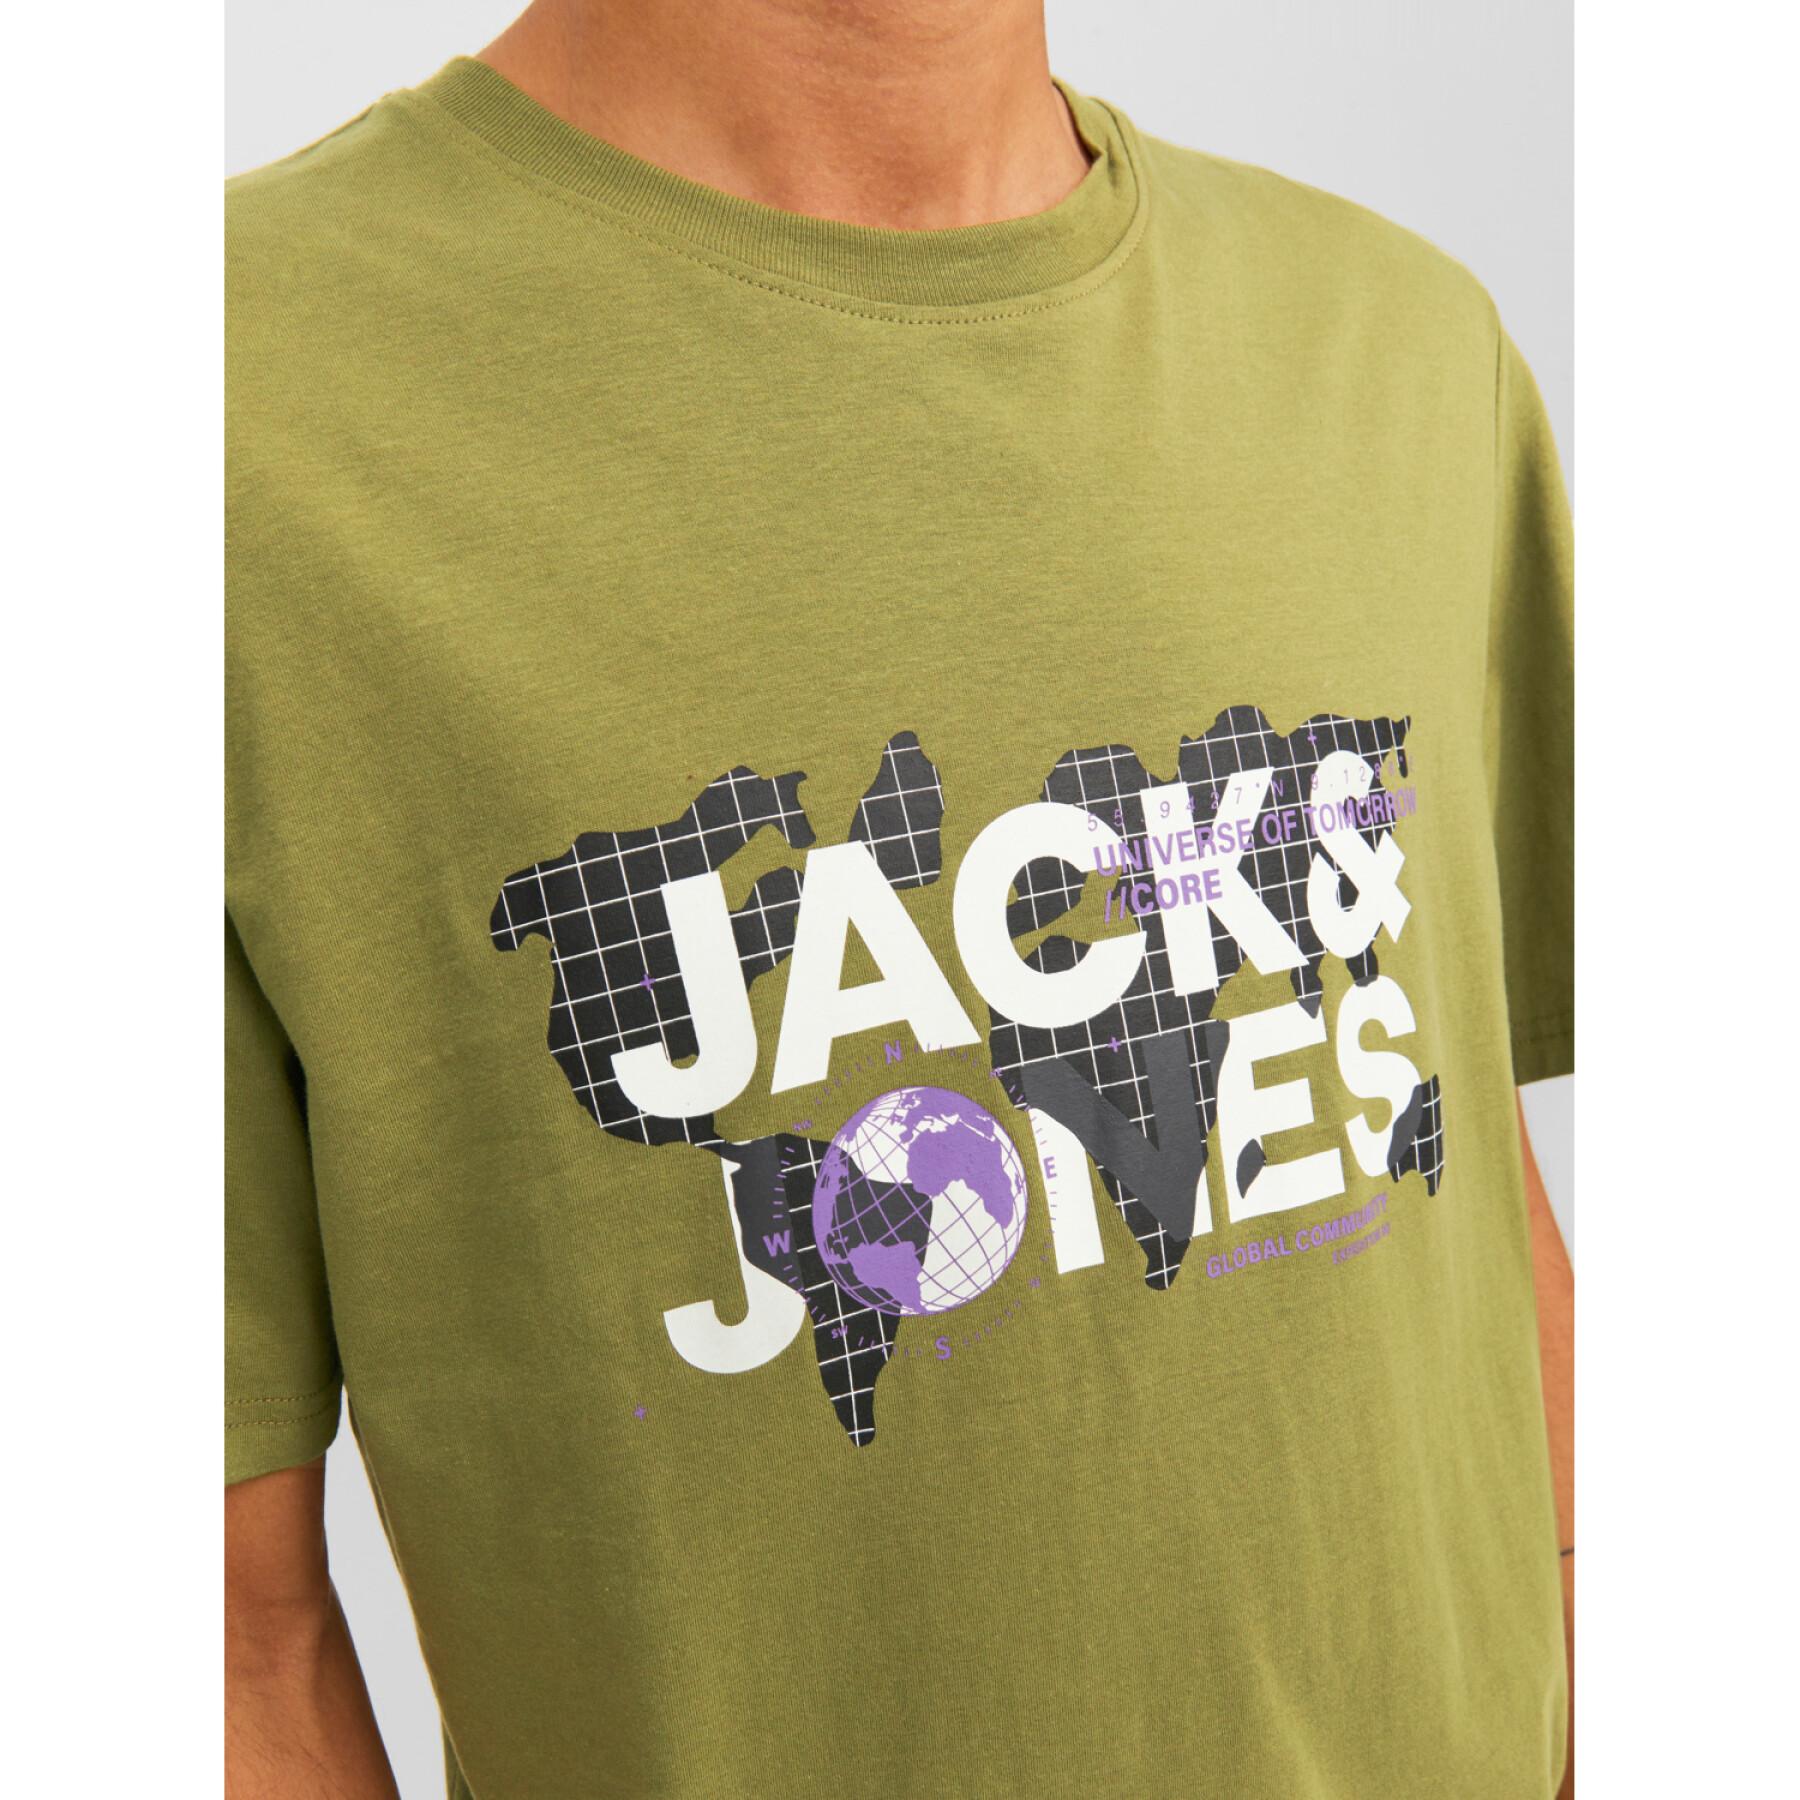 T-shirt met ronde hals Jack & Jones Dust